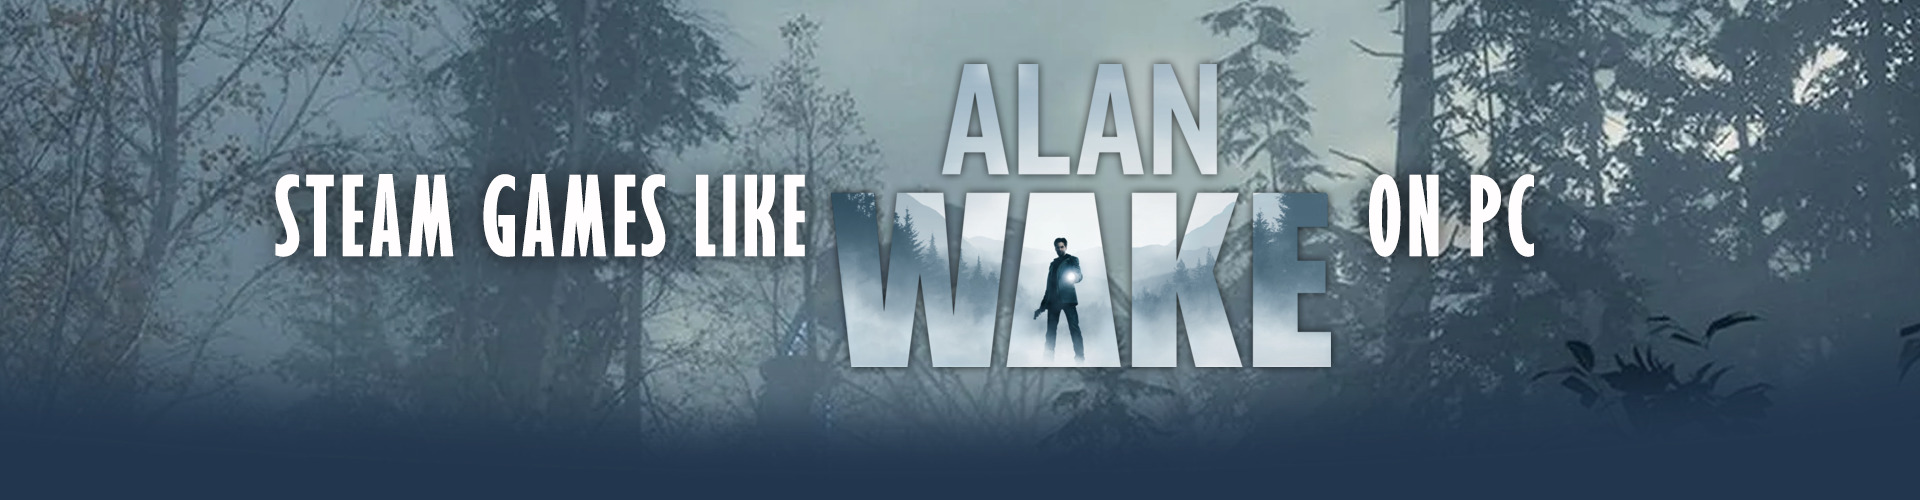 Juegos de Steam como Alan Wake en PC